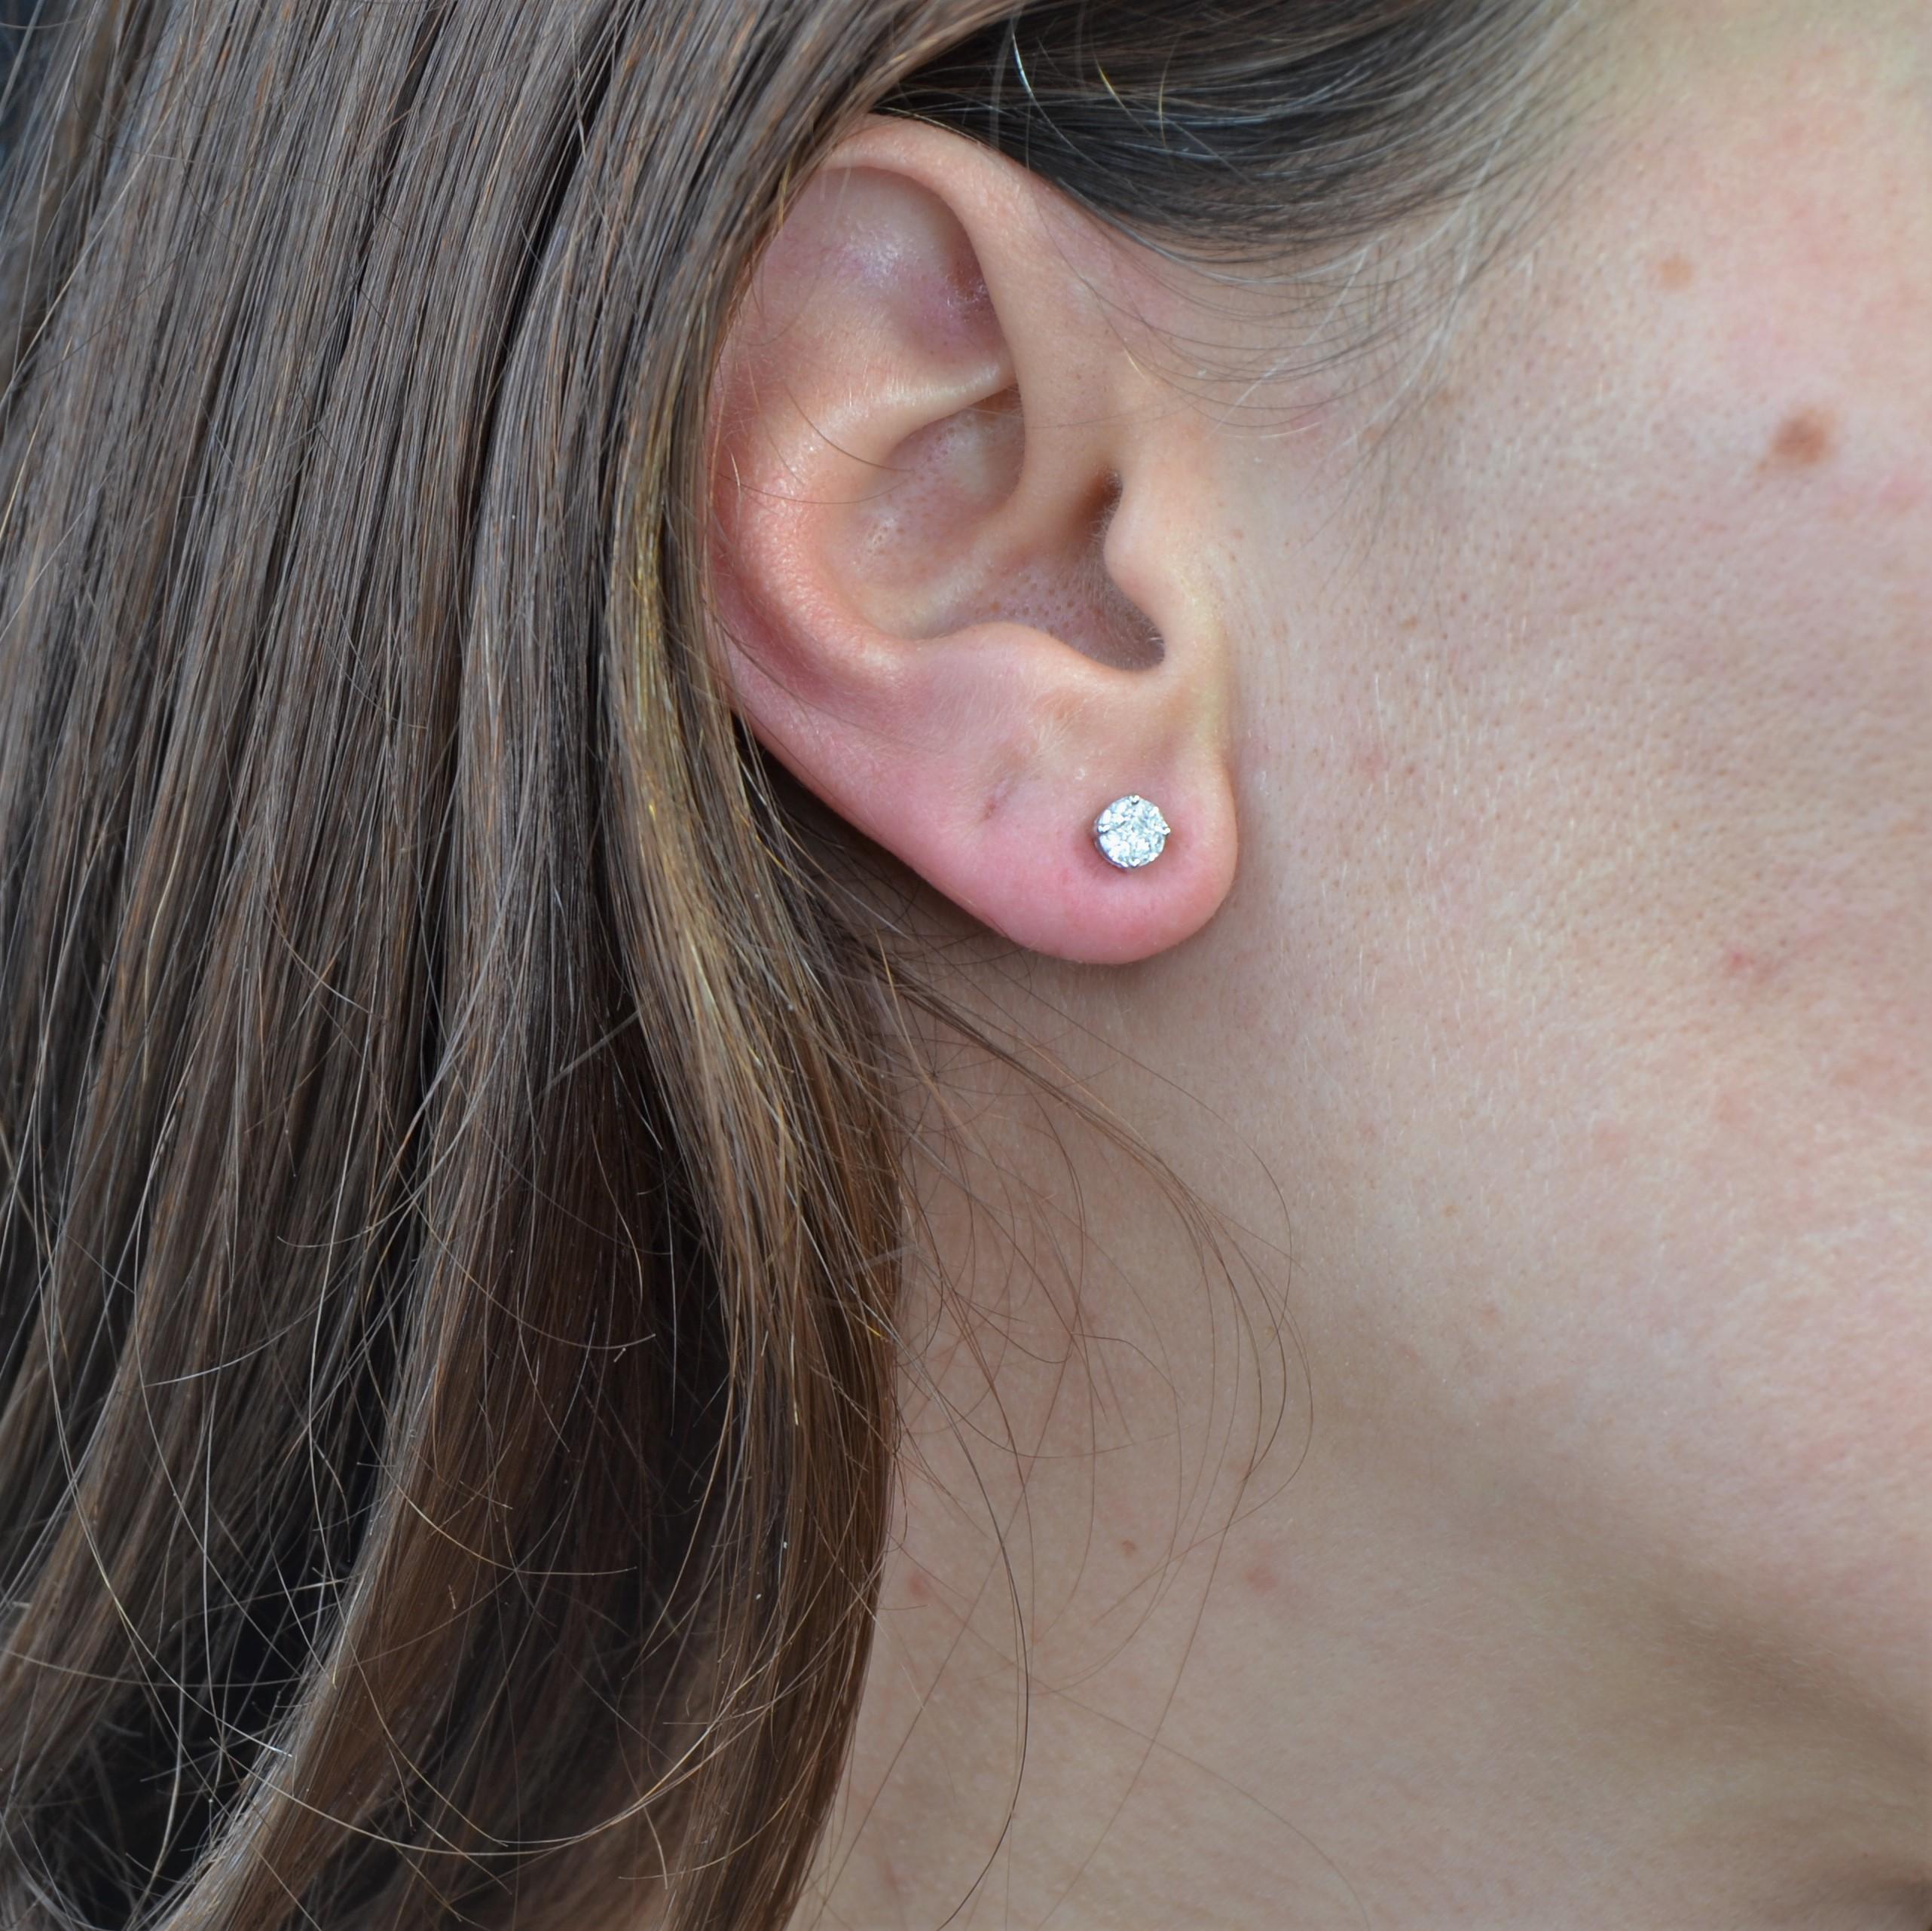 Für gepiercte Ohren.
Ohrringe aus 18 Karat Weißgold.
Diese dünnen Ohrringe aus Weißgold bestehen aus einem zentralen Diamanten im Prinzessinnenschliff, der von vier Navette-Diamanten umgeben ist, und sind mit Krallen besetzt. Der Verschluss dieser